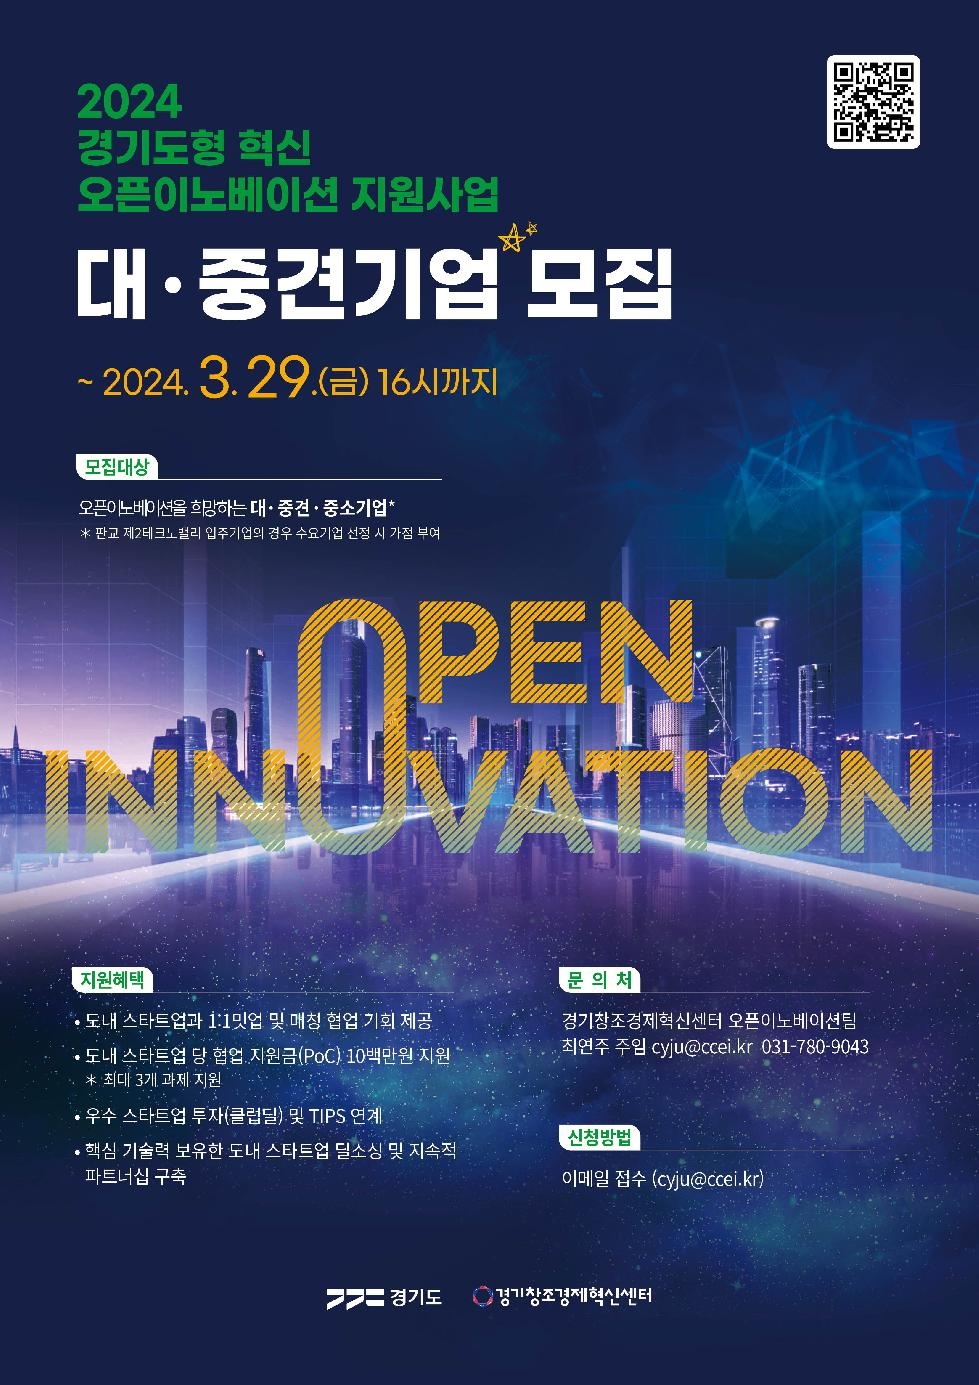 경기도, 도내 스타트업과 ‘오픈이노베이션’에 참여할 대ㆍ중견기업 모집